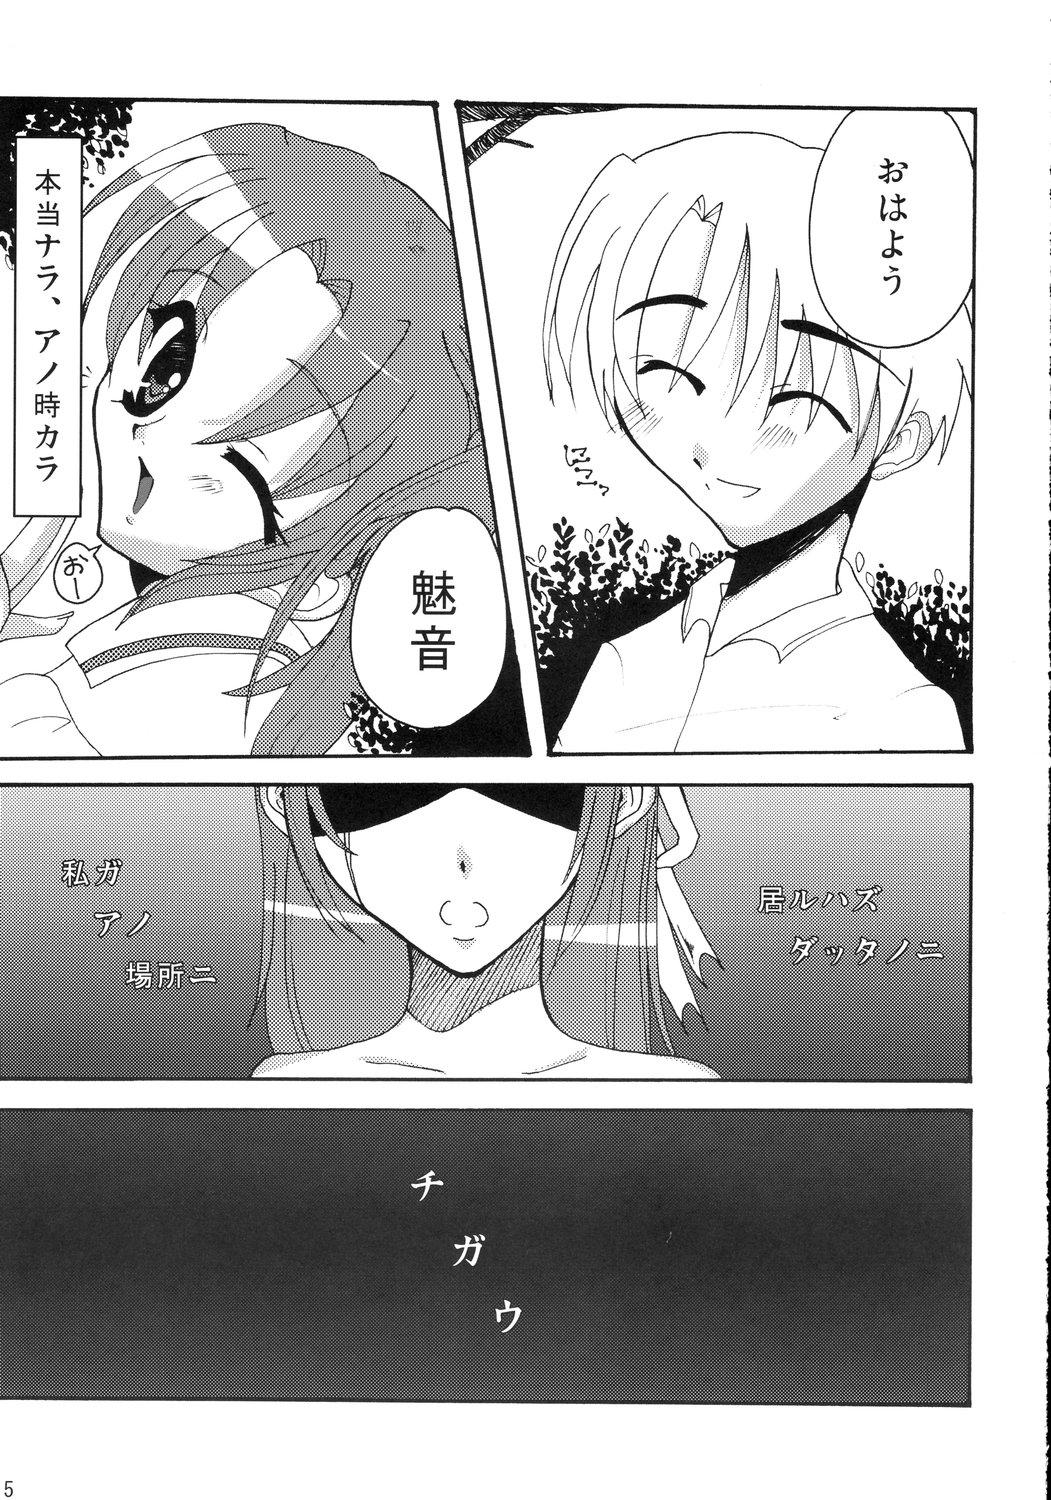 Mamando Kiss Rock - Higurashi no naku koro ni Gays - Page 5